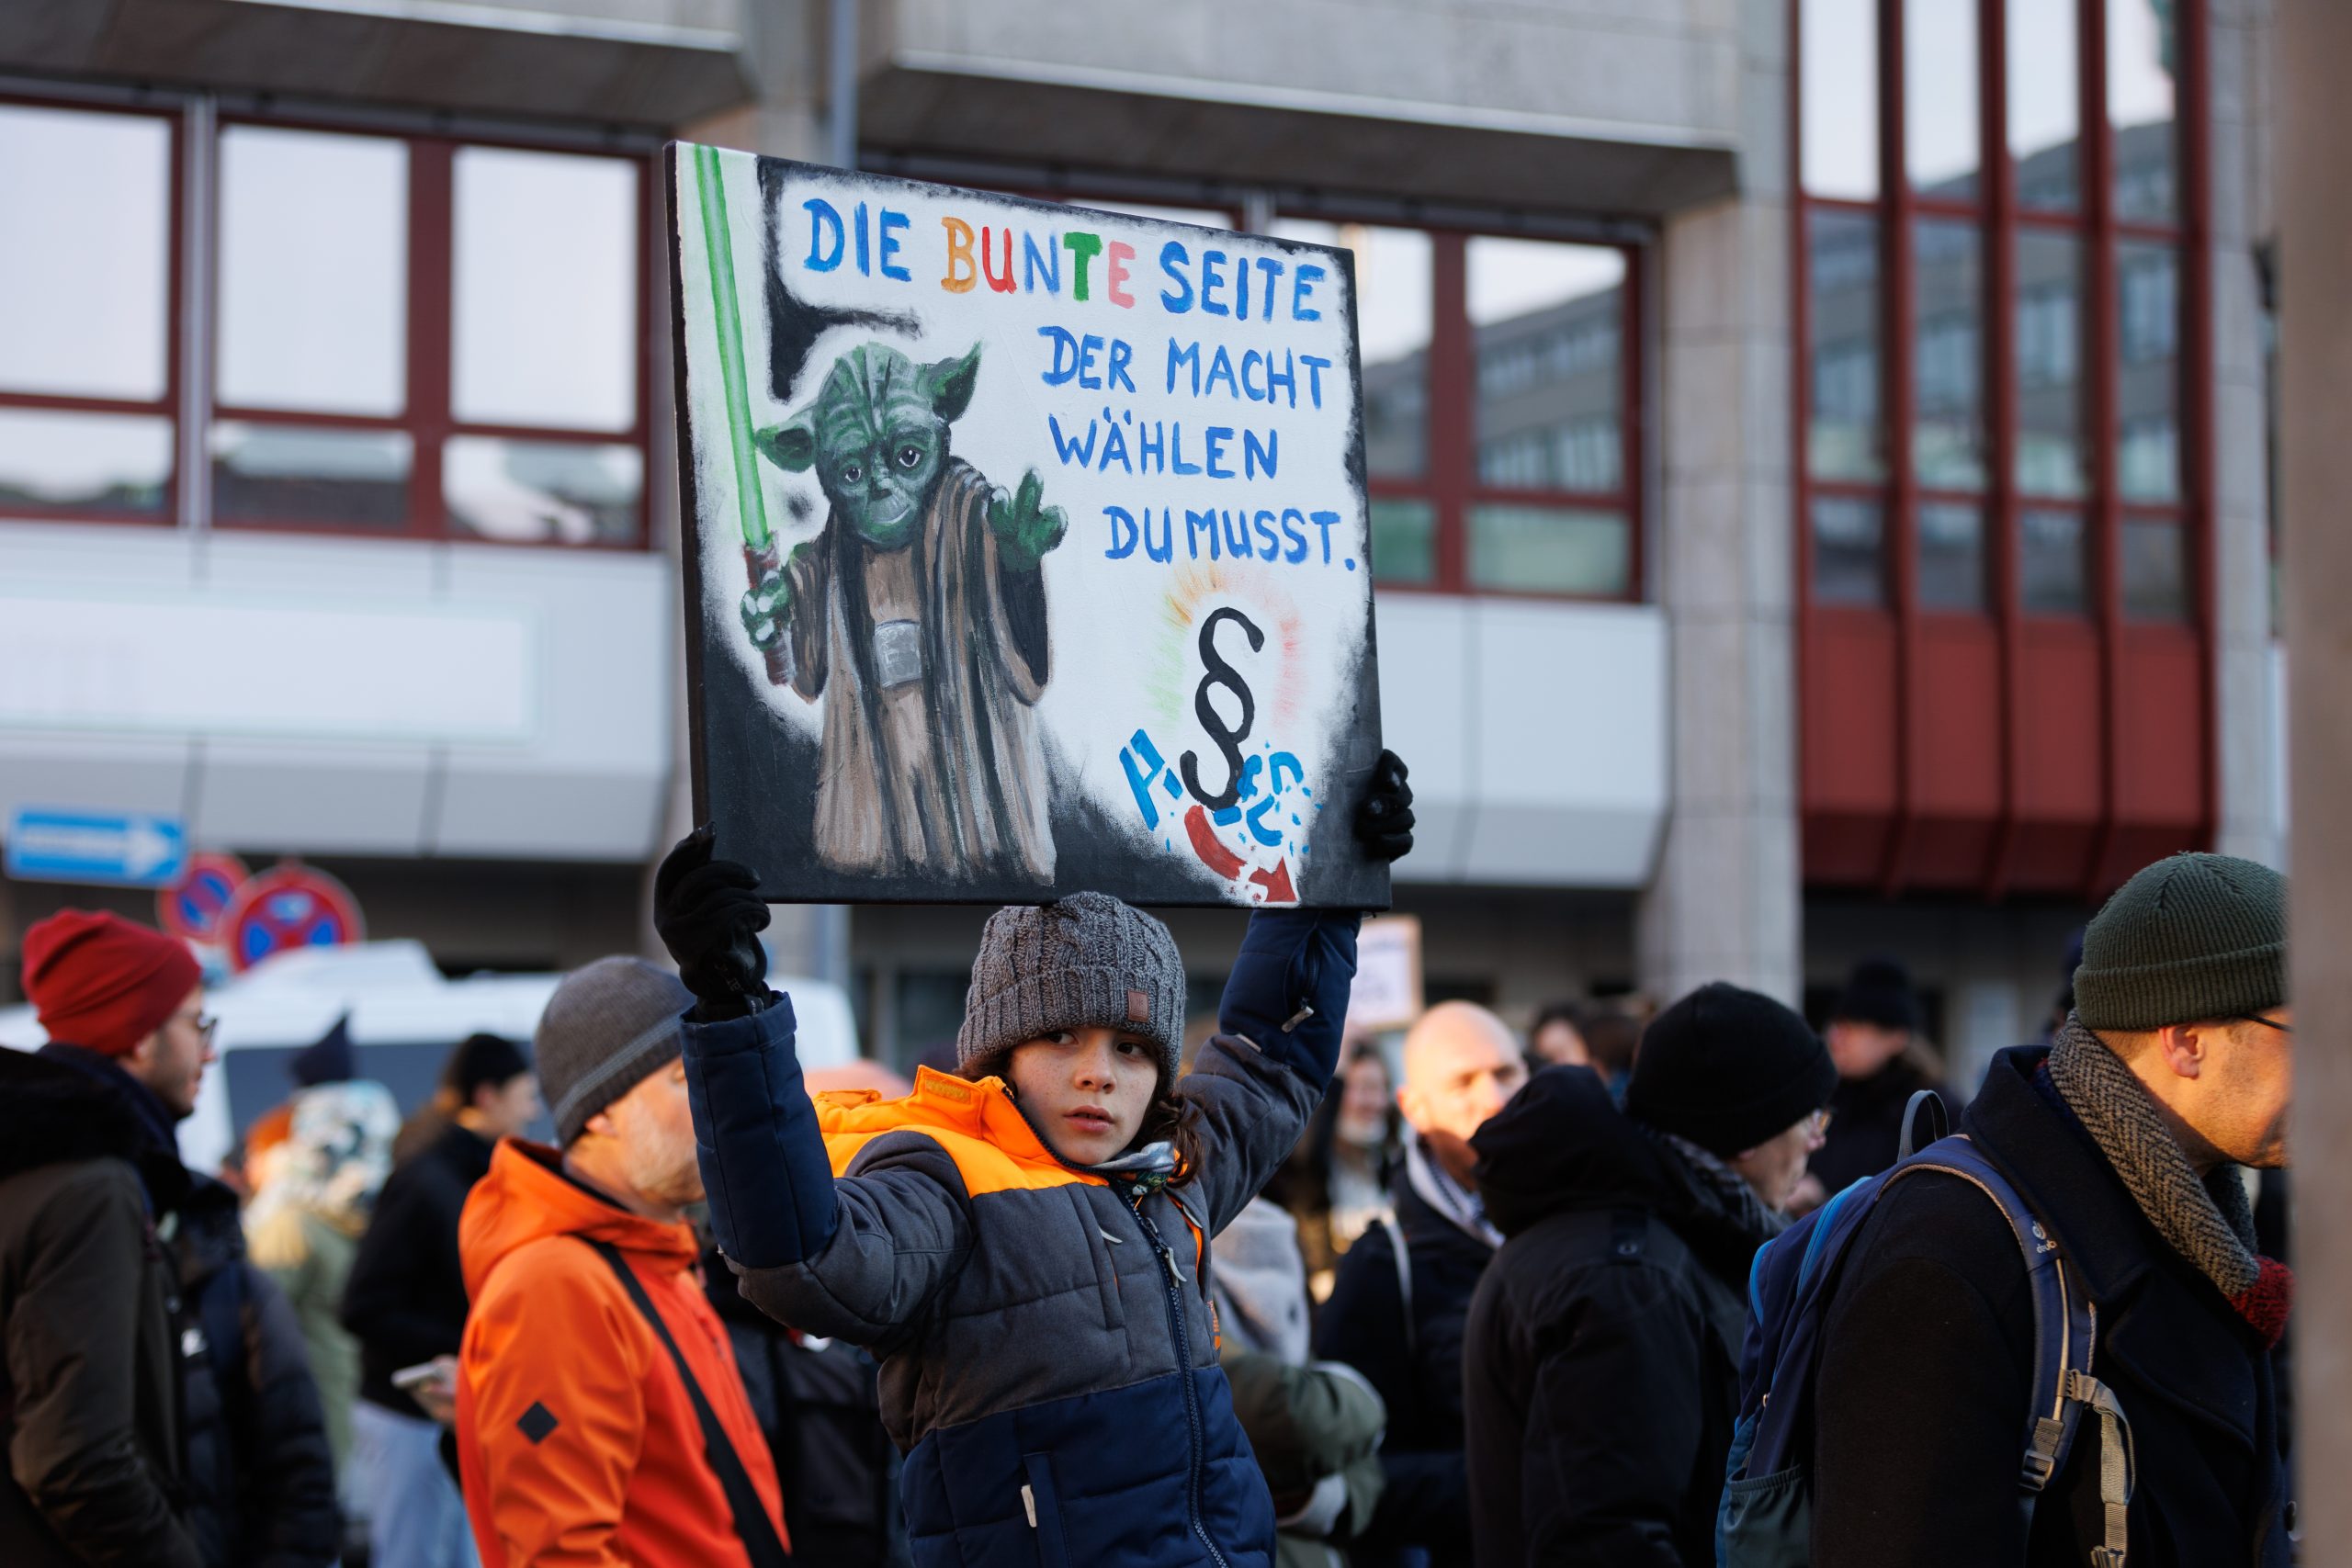 Ein Junge hält bei der Demo gegen Rechtsextremismus am 20. Januar 2024 in Nürnberg ein Plakat in die Höhe. Darauf eine Yoda-Zeichnung und der Satz "Die bunte Seite der Macht wählen du musst"